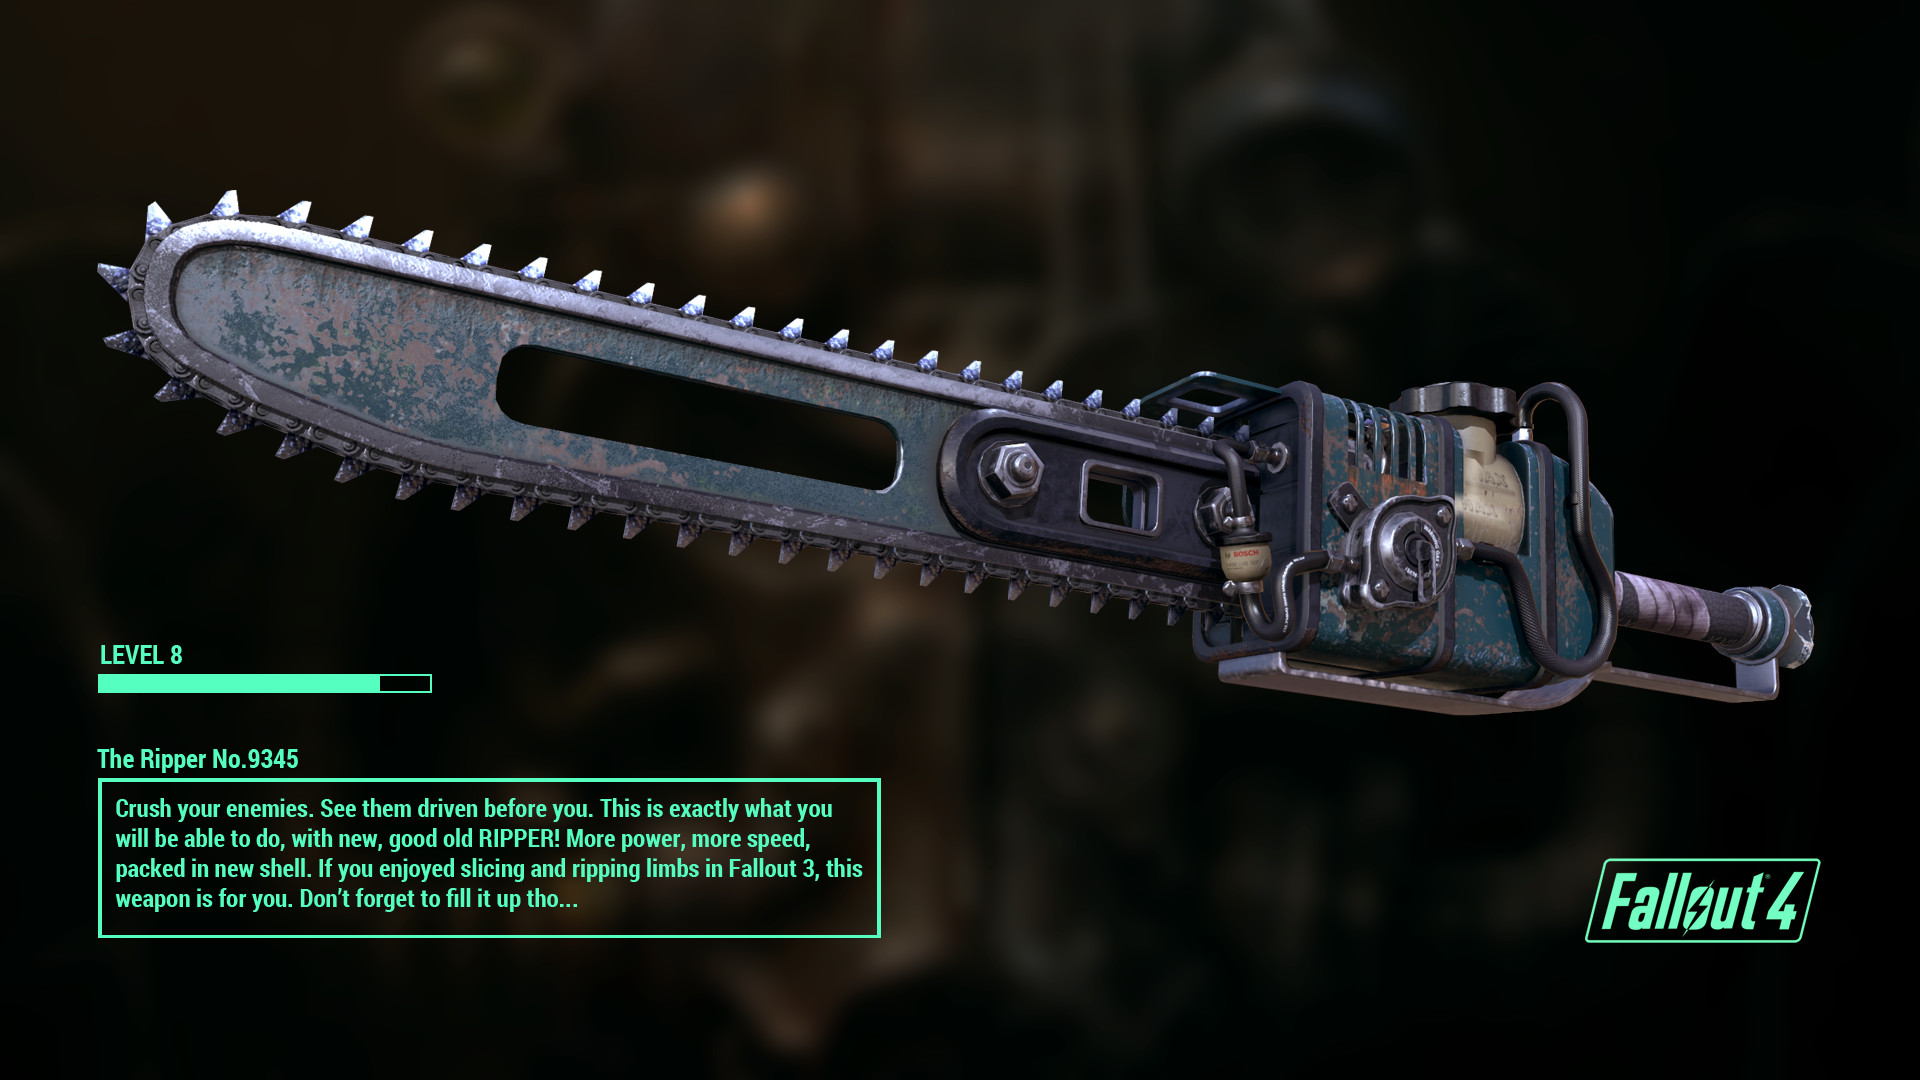 Fallout 4 меч абрахама финча фото 37